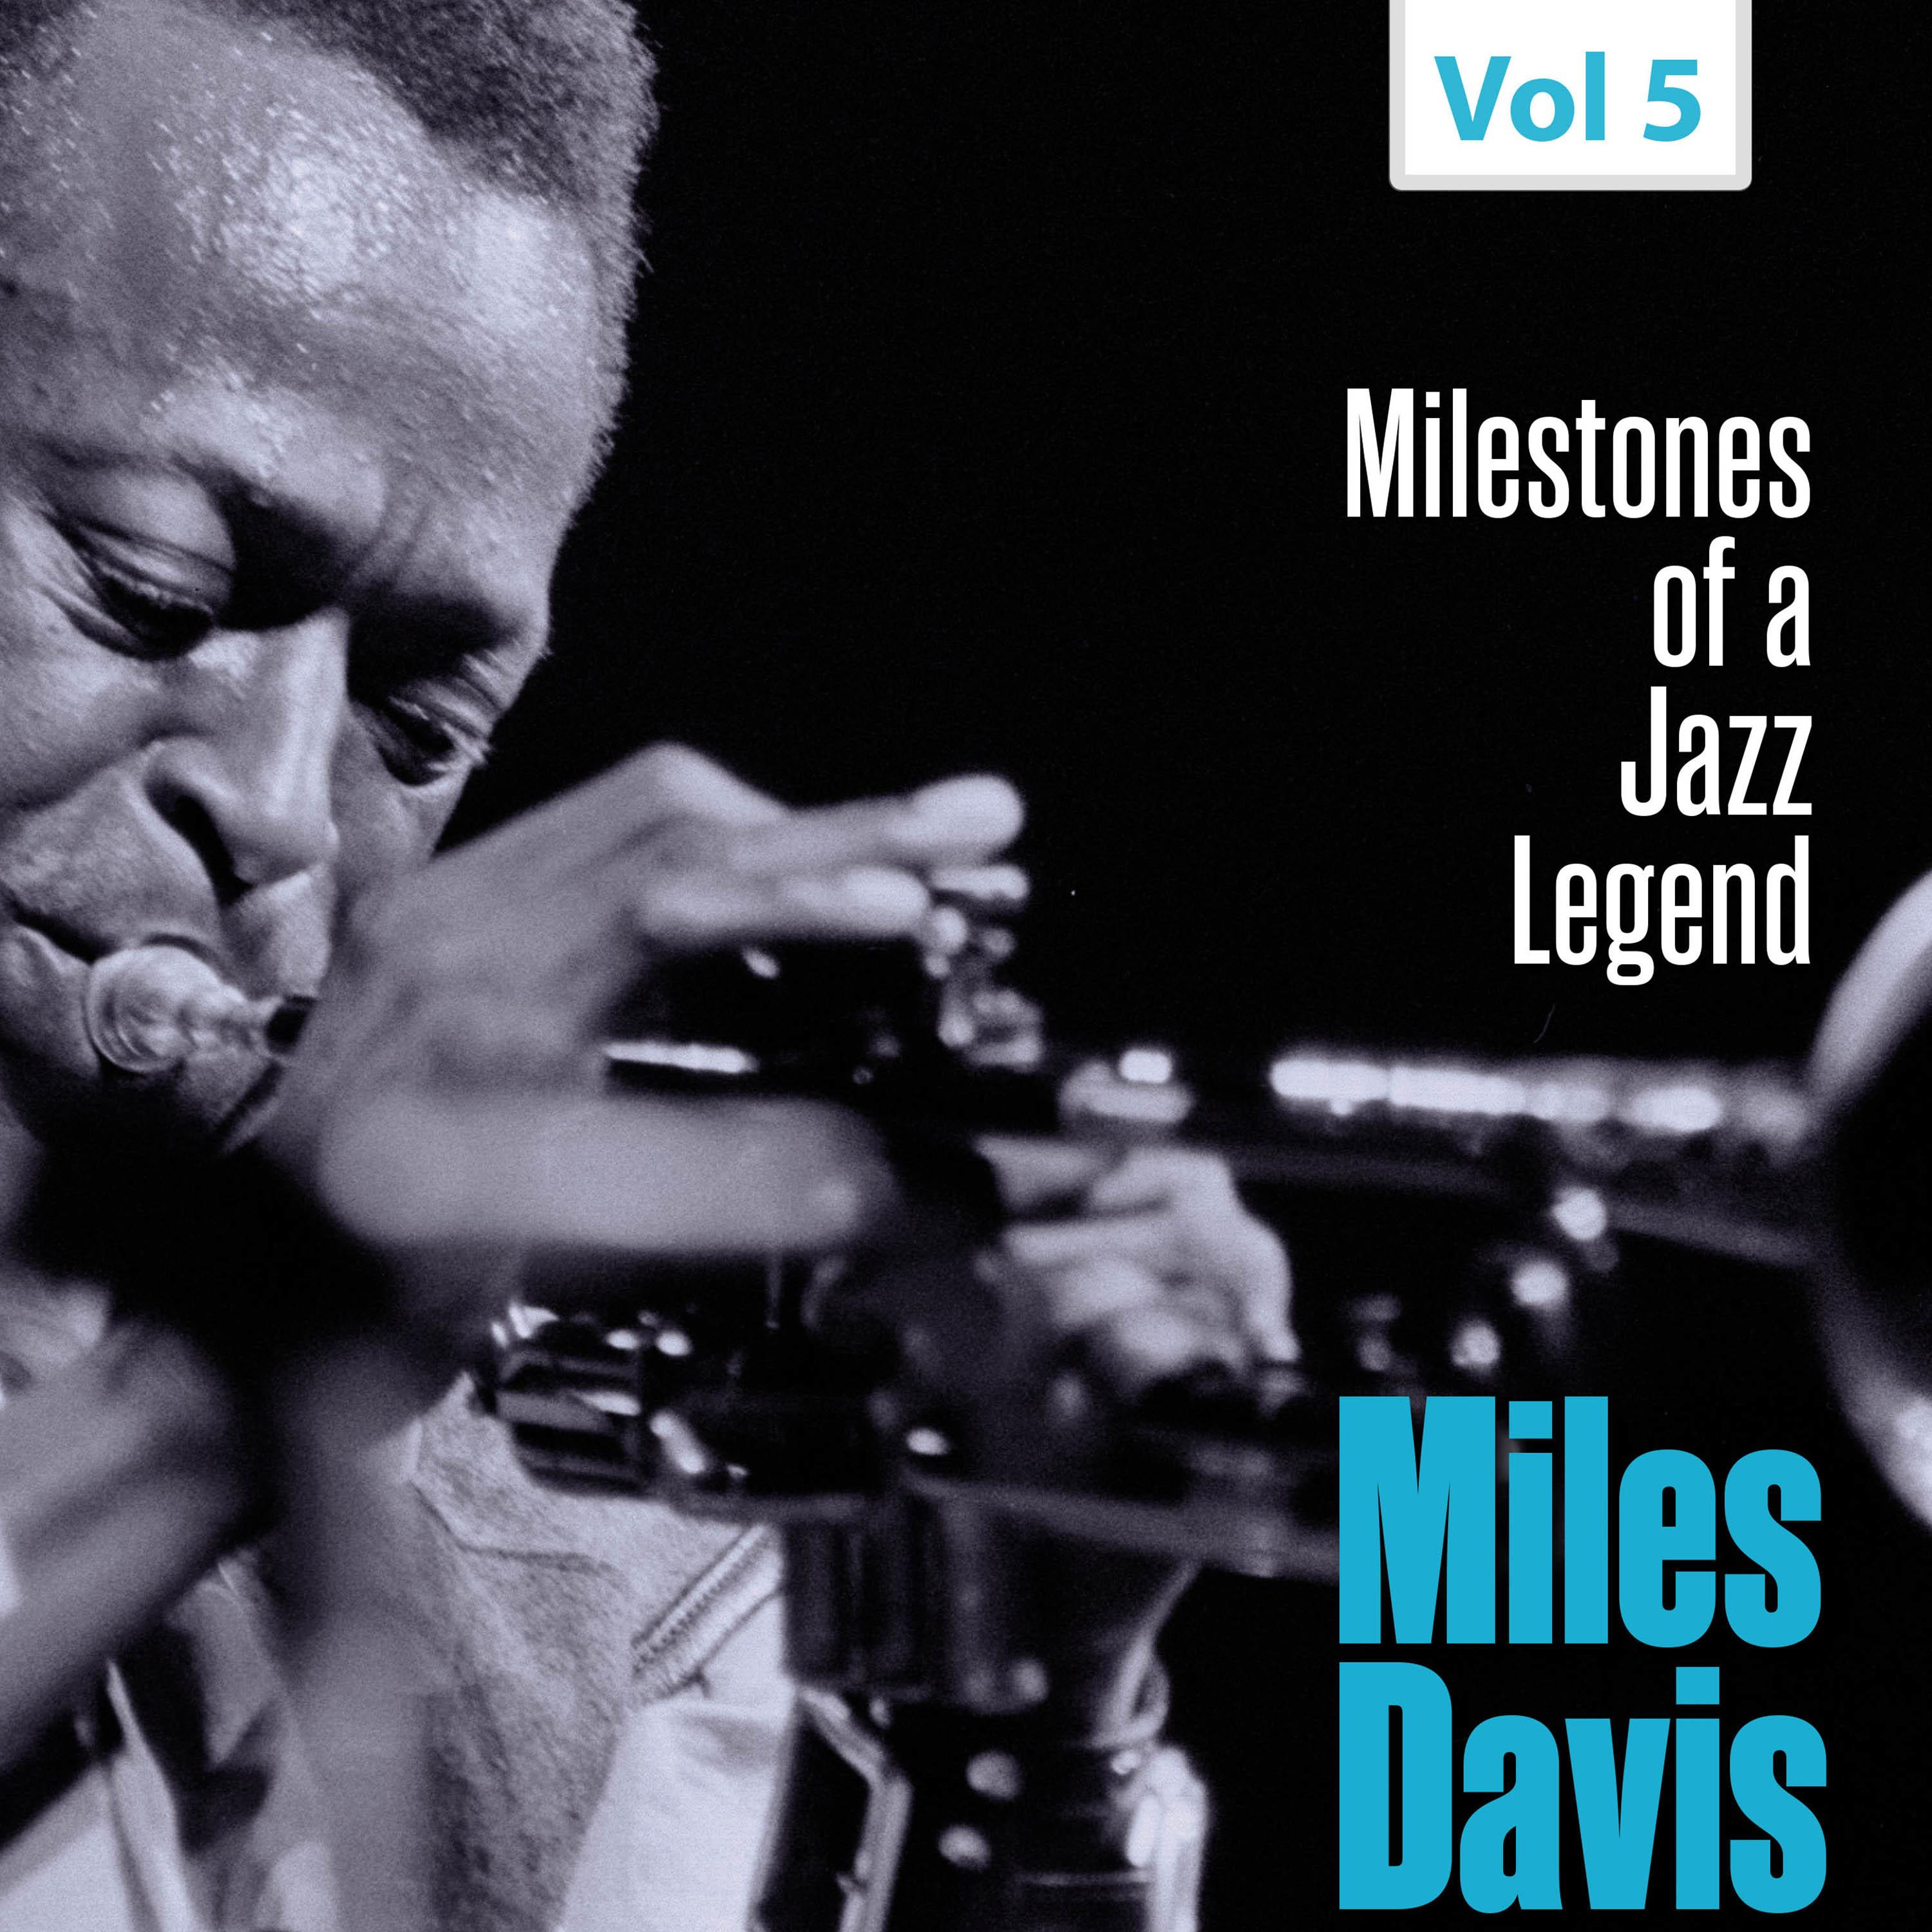 Milestones of a Jazz Legend - Miles Davis, Vol. 5